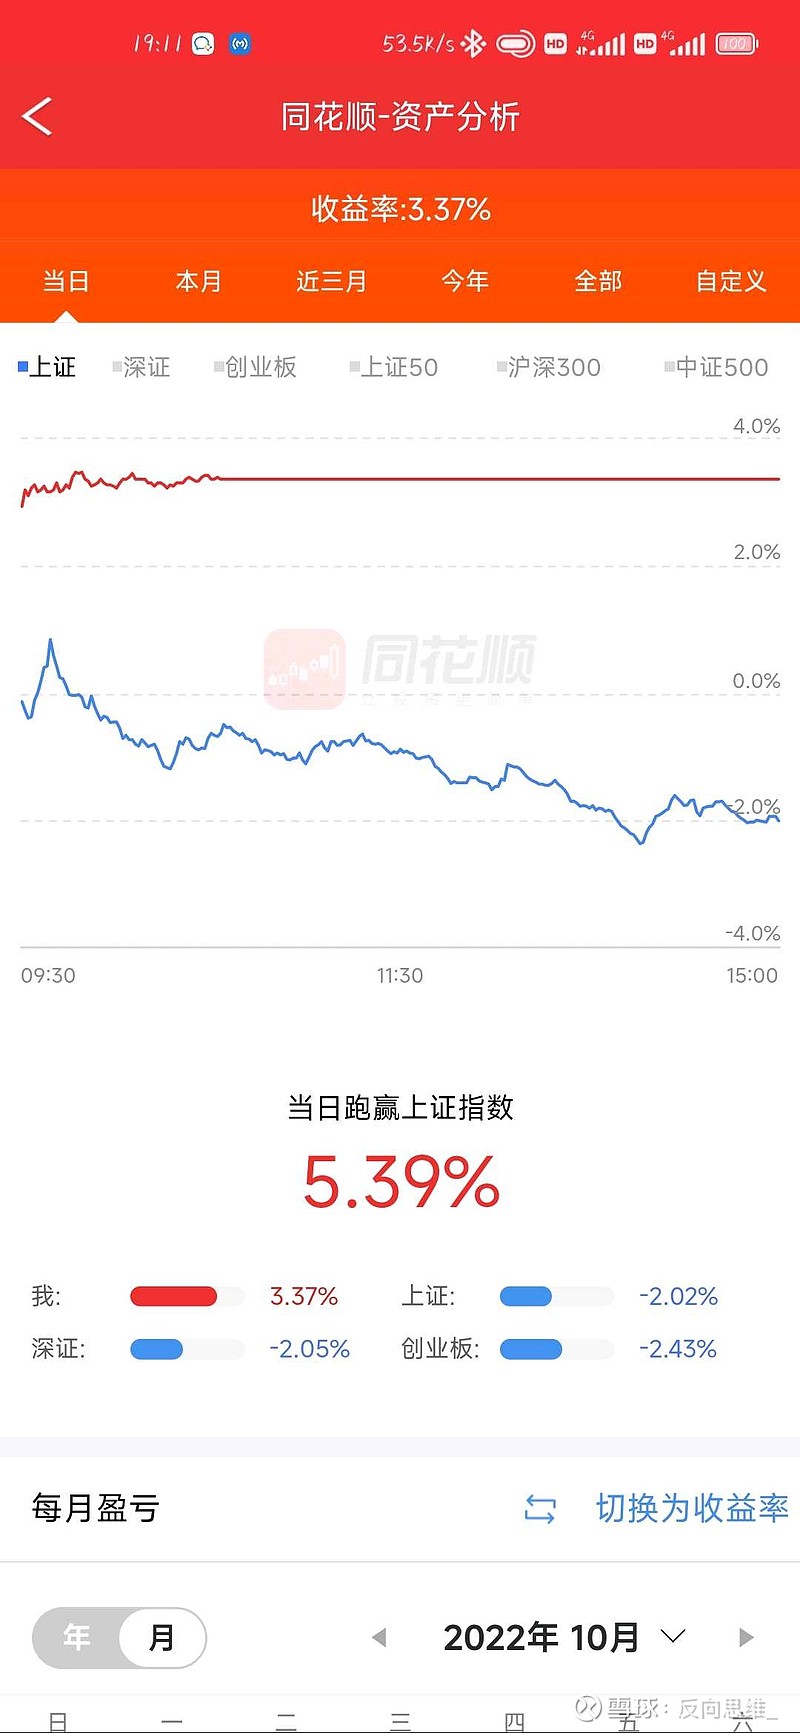 今日收益:3.37％， 京威股